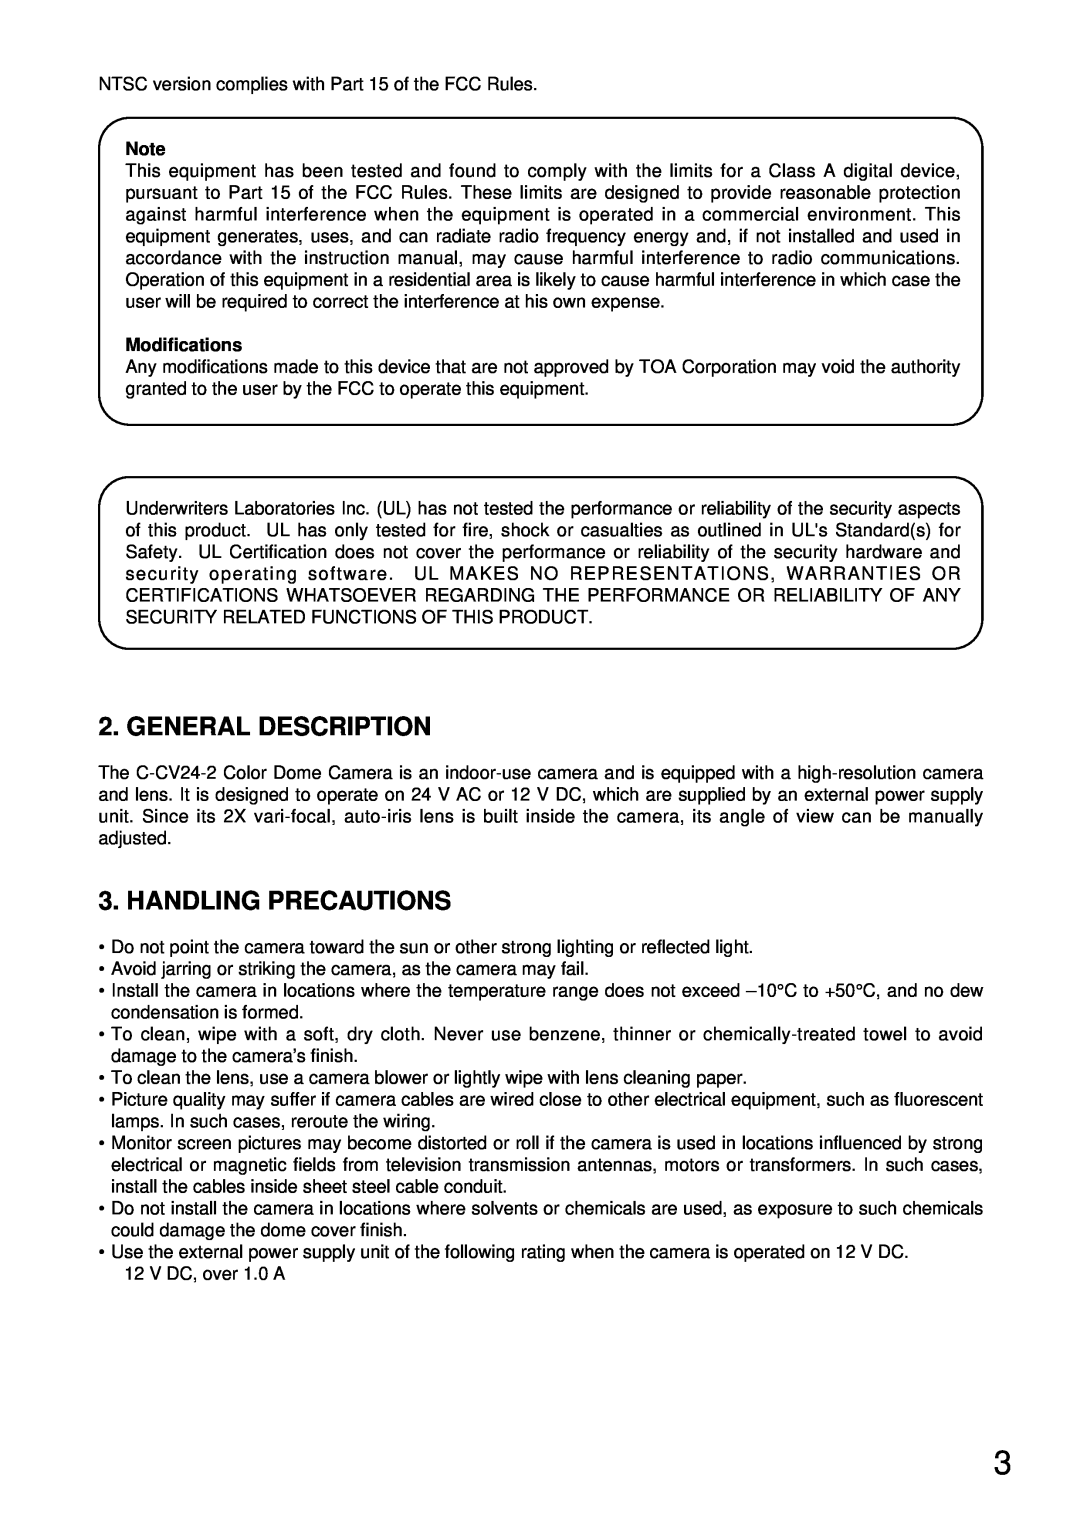 TOA Electronics C-CV24-2 NTSC instruction manual General Description, Handling Precautions, Modifications 